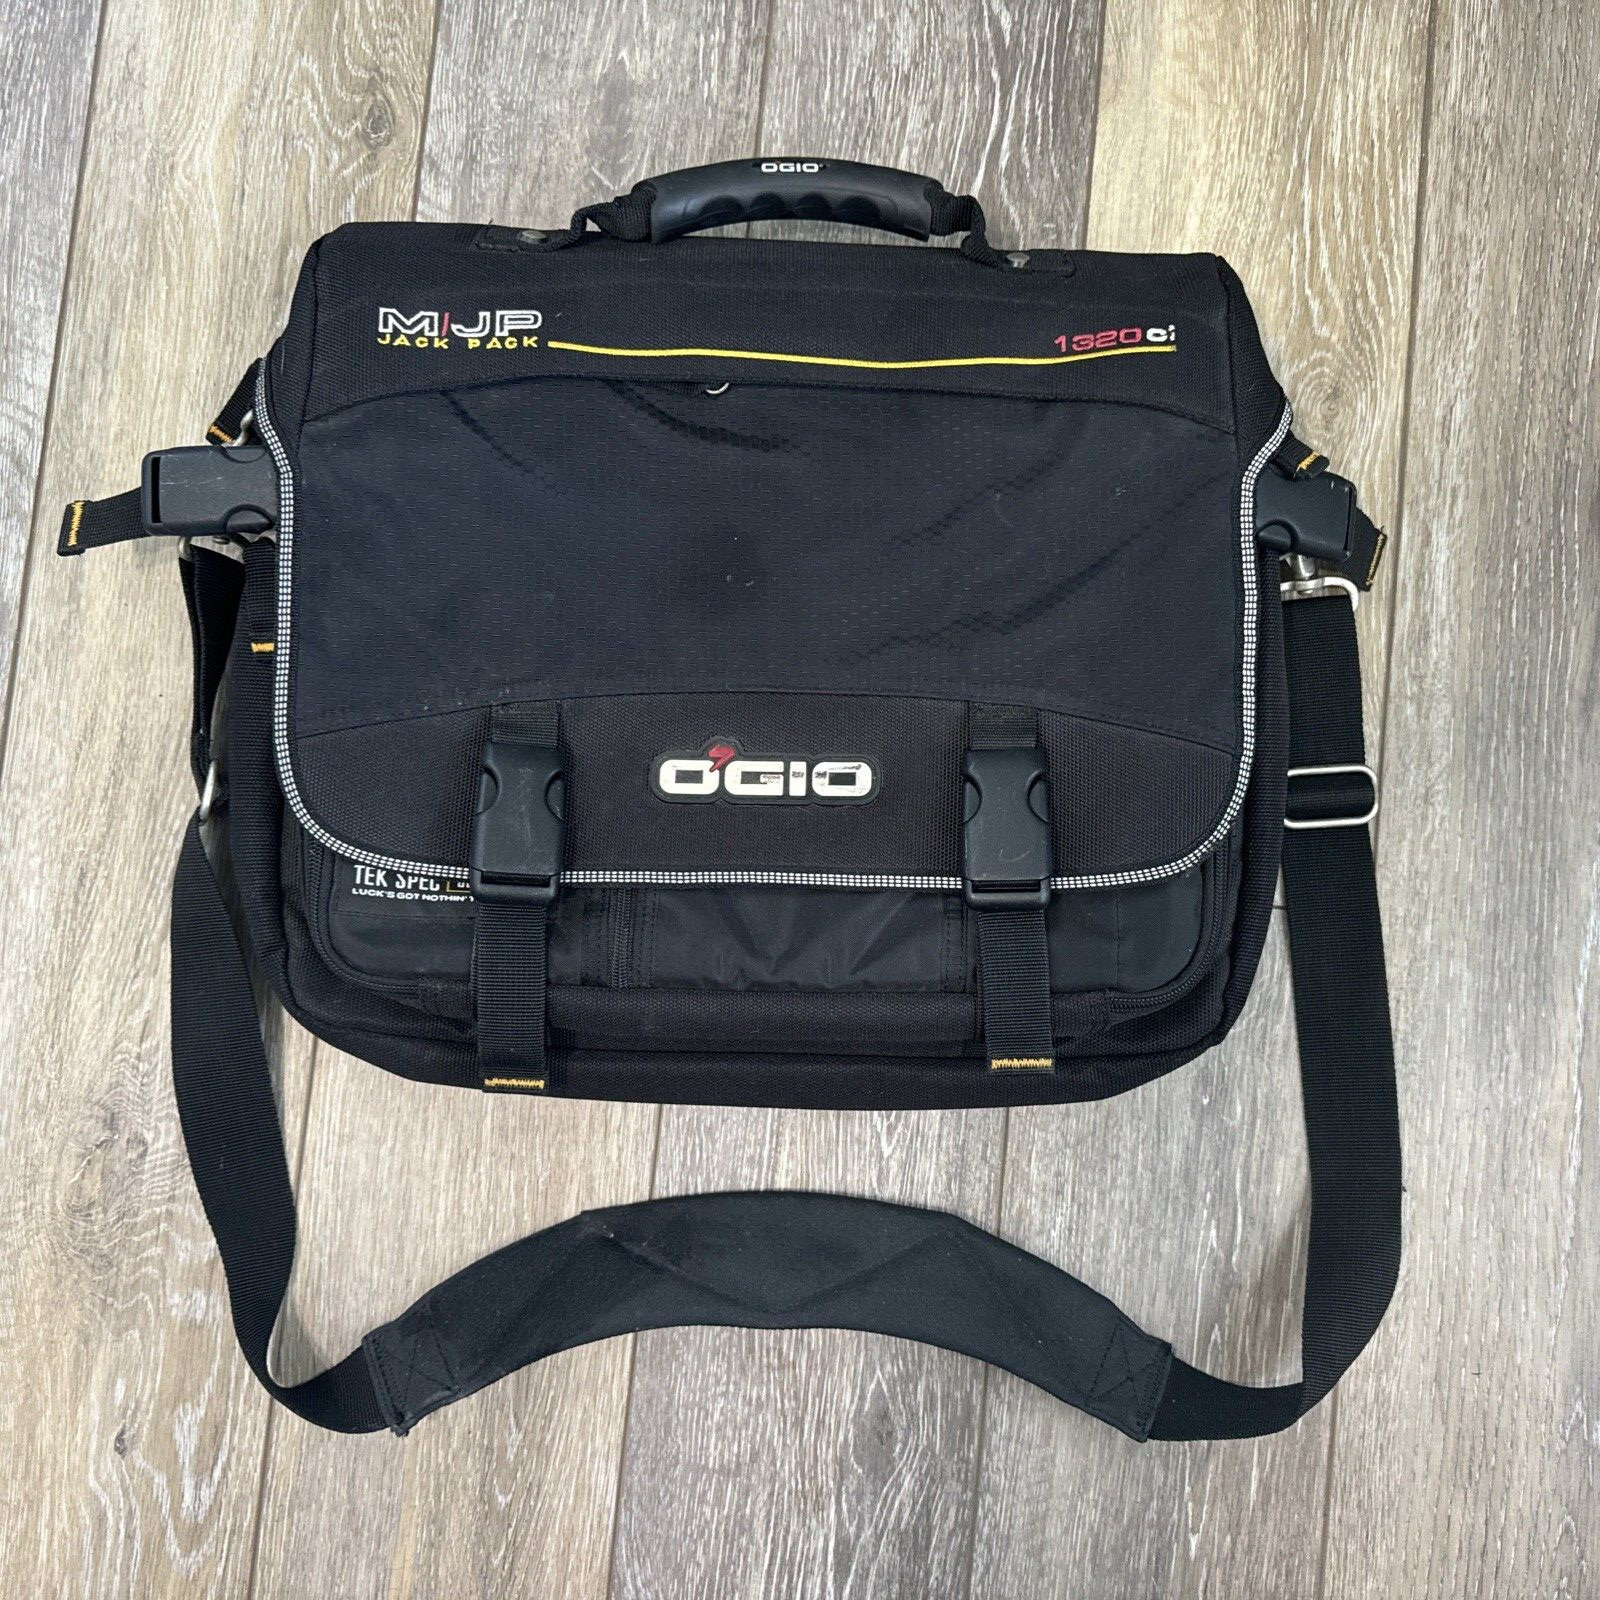 OGIO Black Jack Pack Laptop/Computer Padded Messenger Bag Briefcase